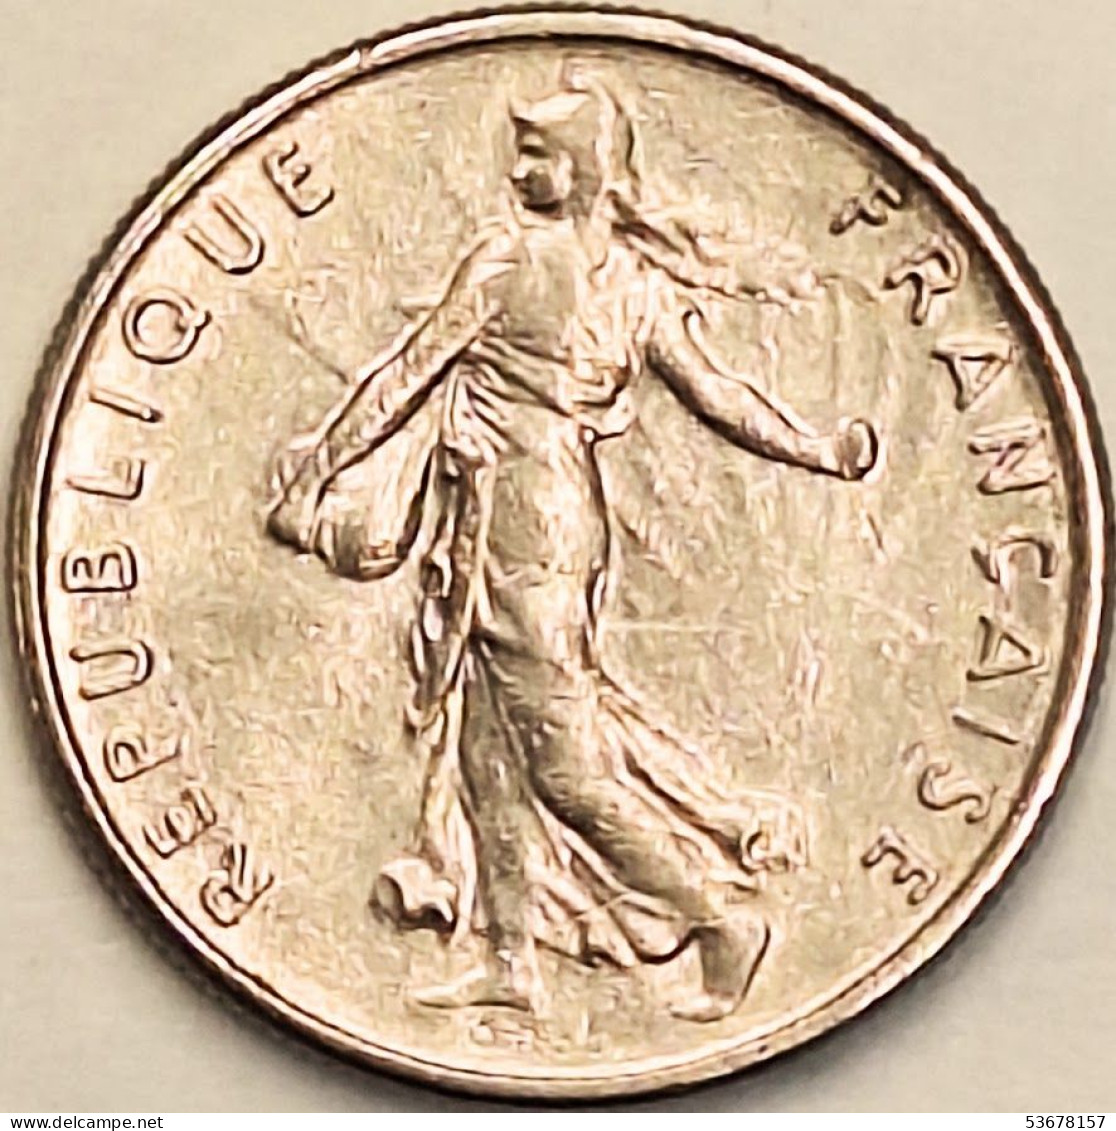 France - 1/2 Franc 1967, KM# 931.1 (#4286) - 1/2 Franc